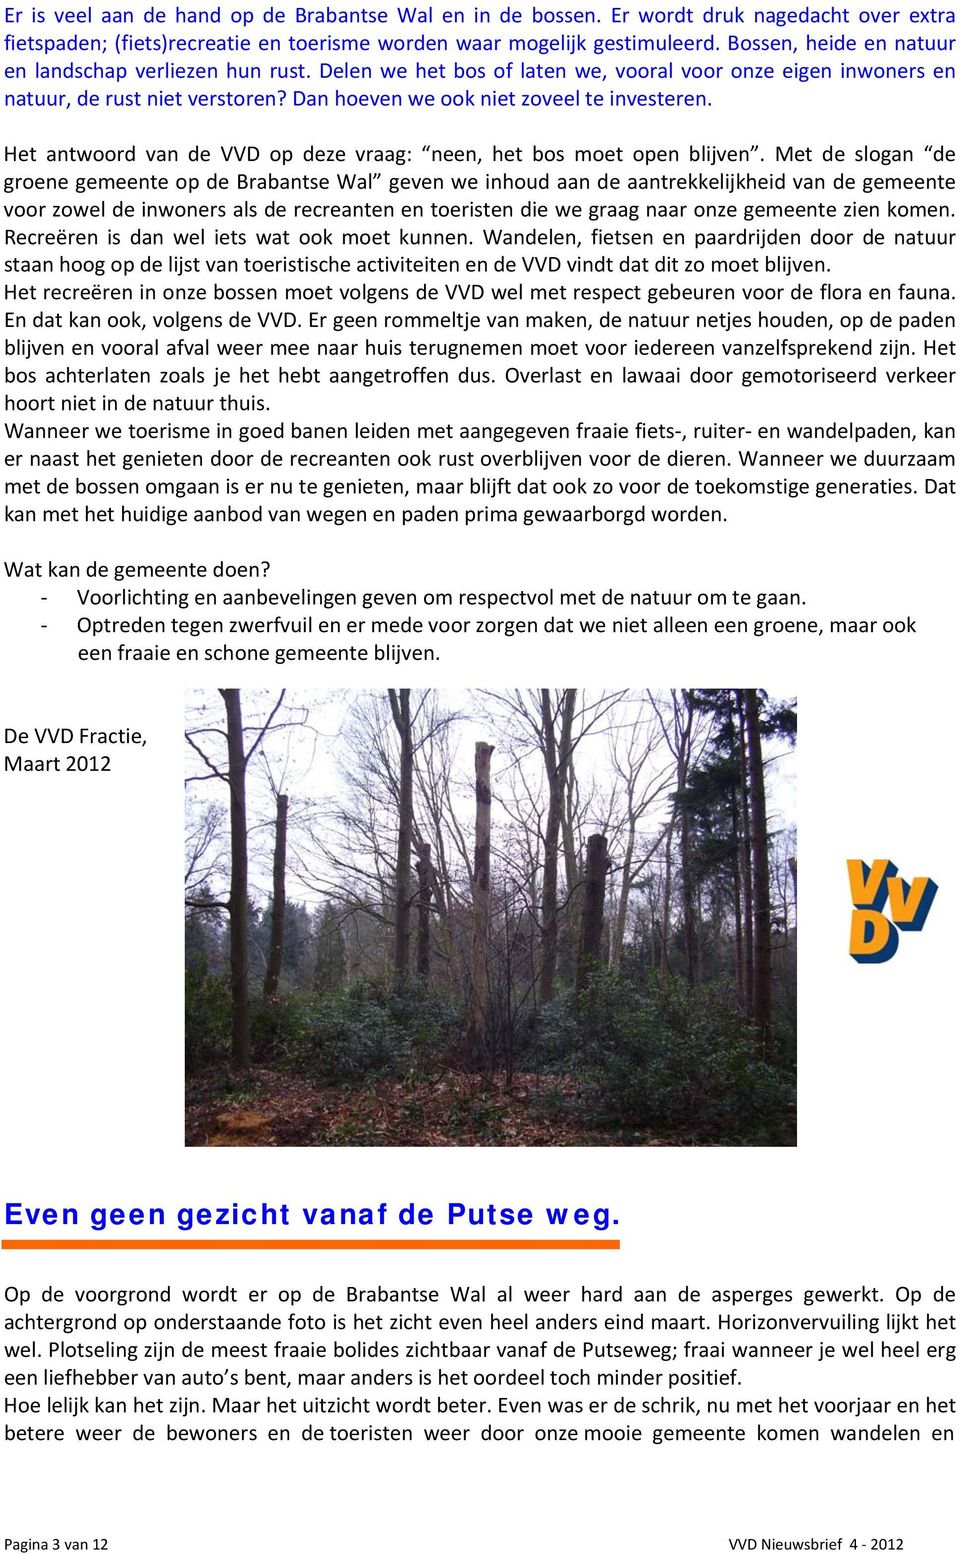 Het antwoord van de VVD op deze vraag: neen, het bos moet open blijven.